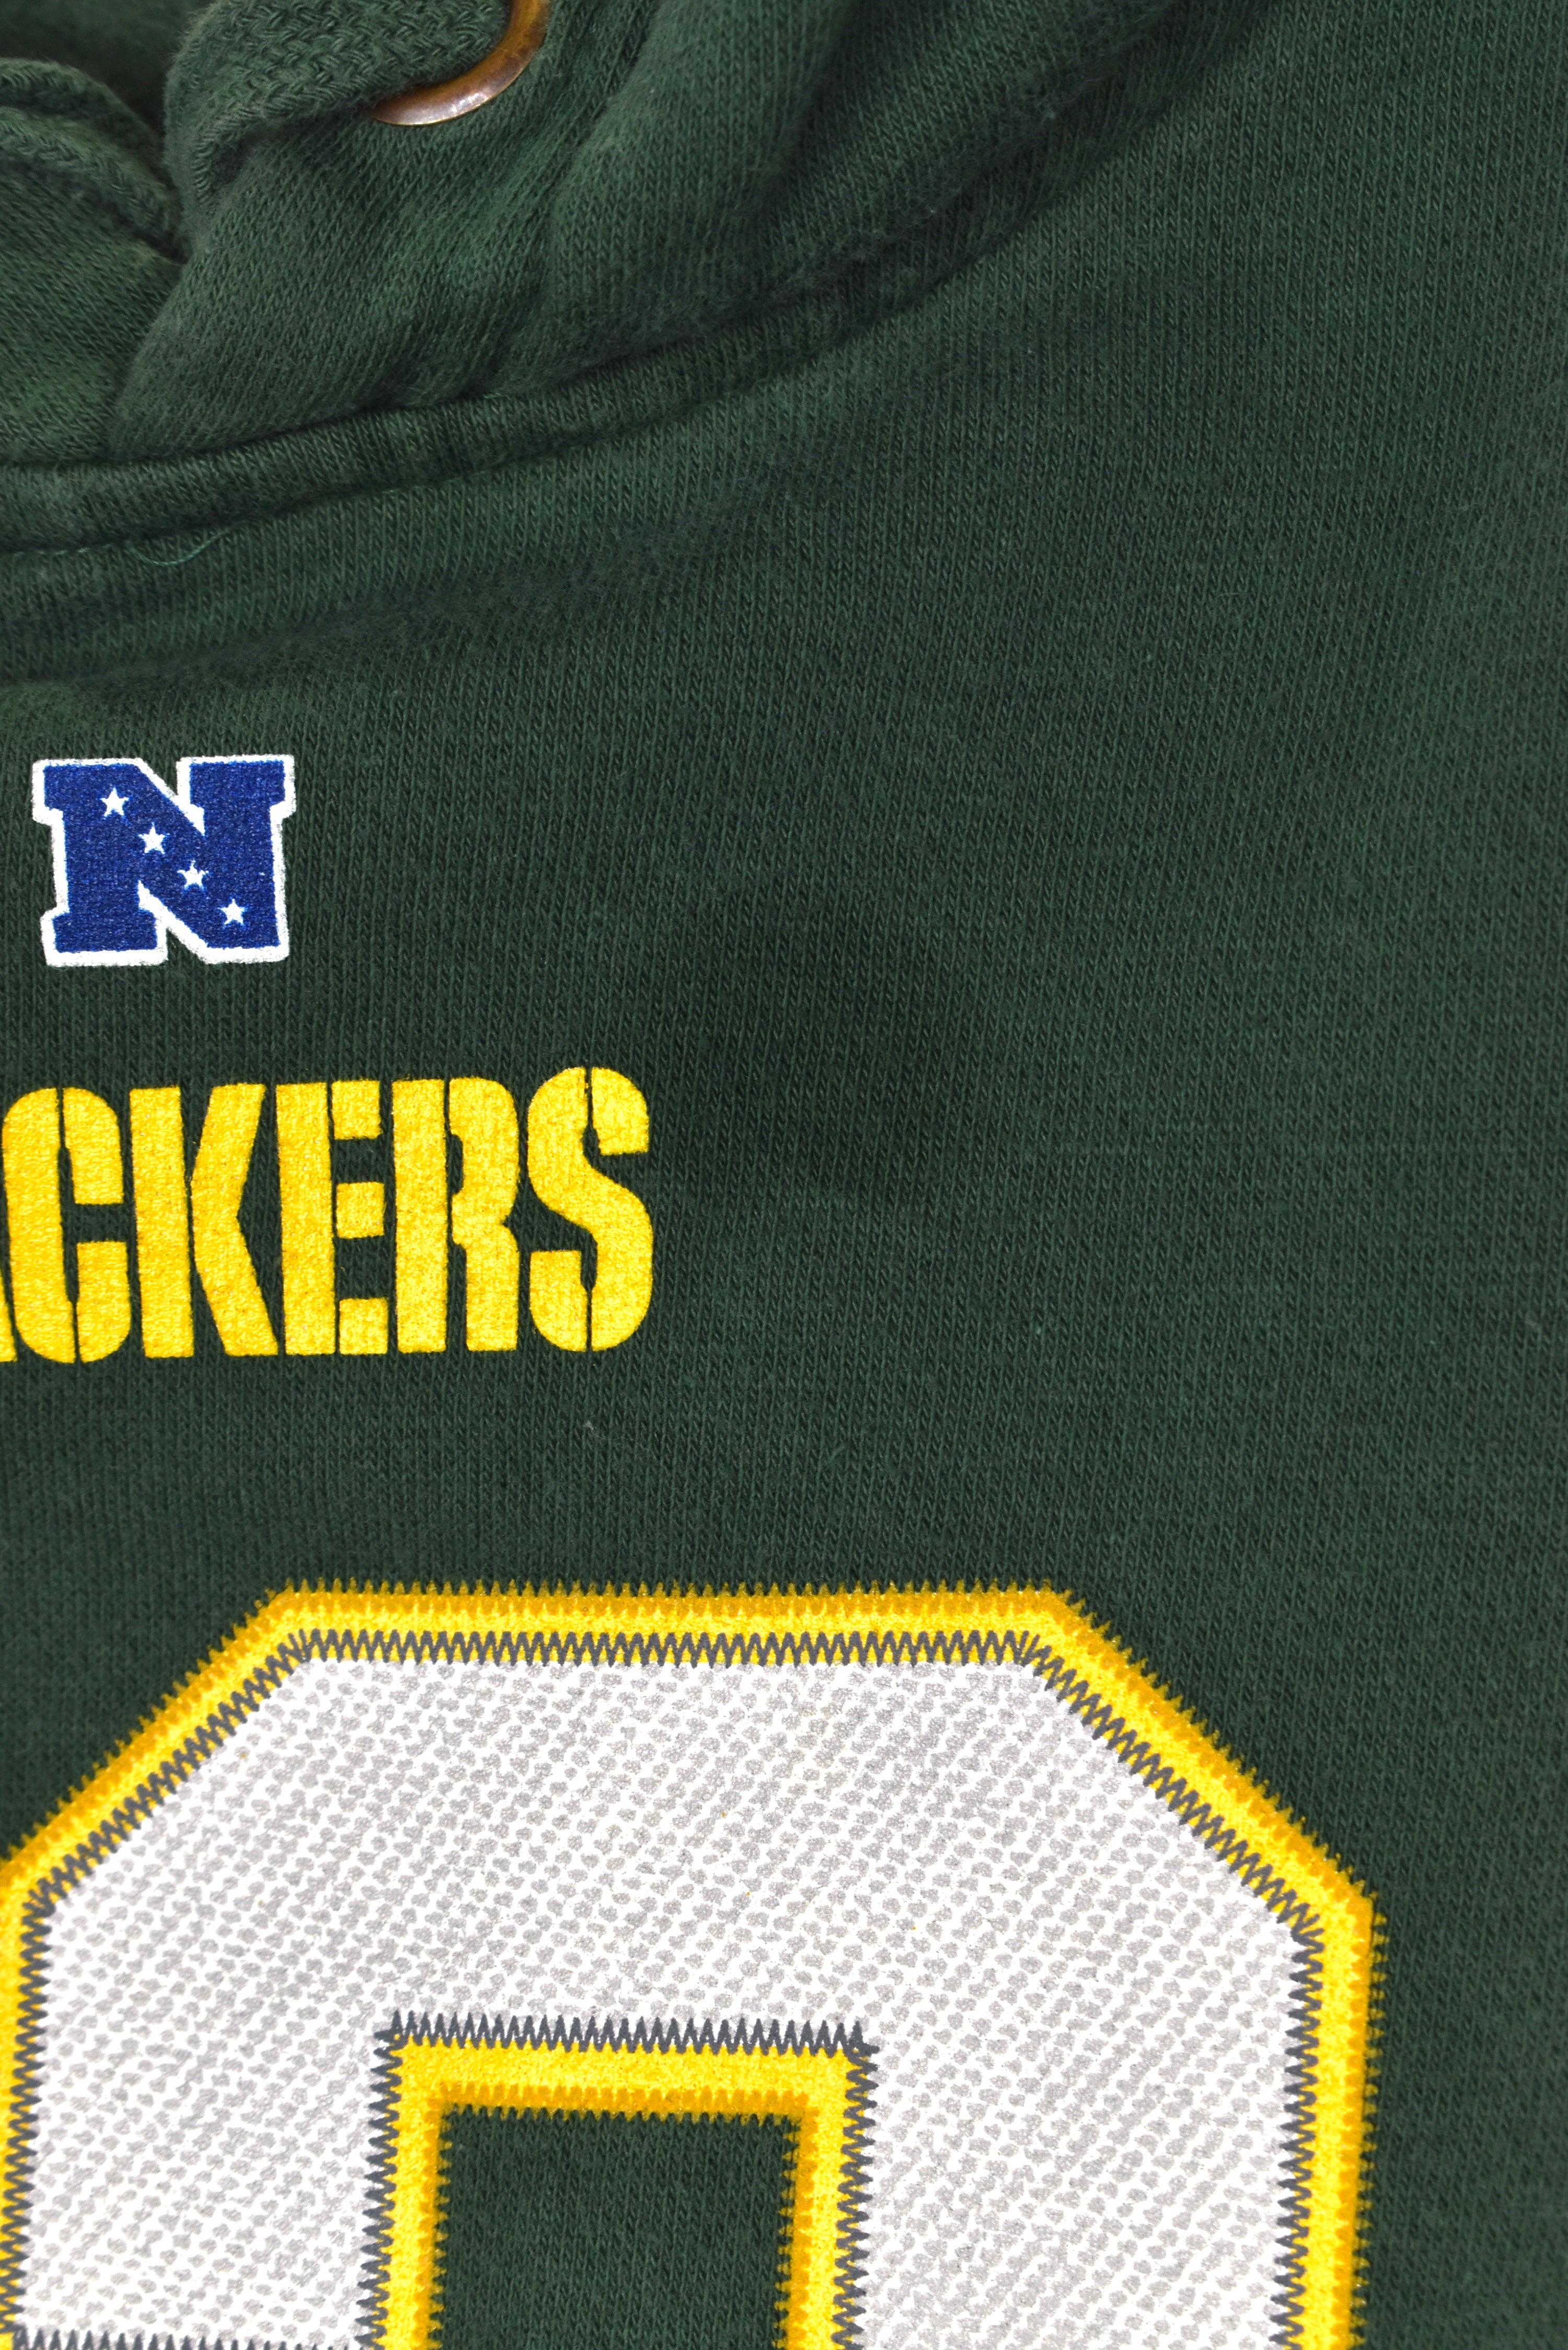 Vintage Green Bay Packers hoodie (XL), green NFL graphic sweatshirt